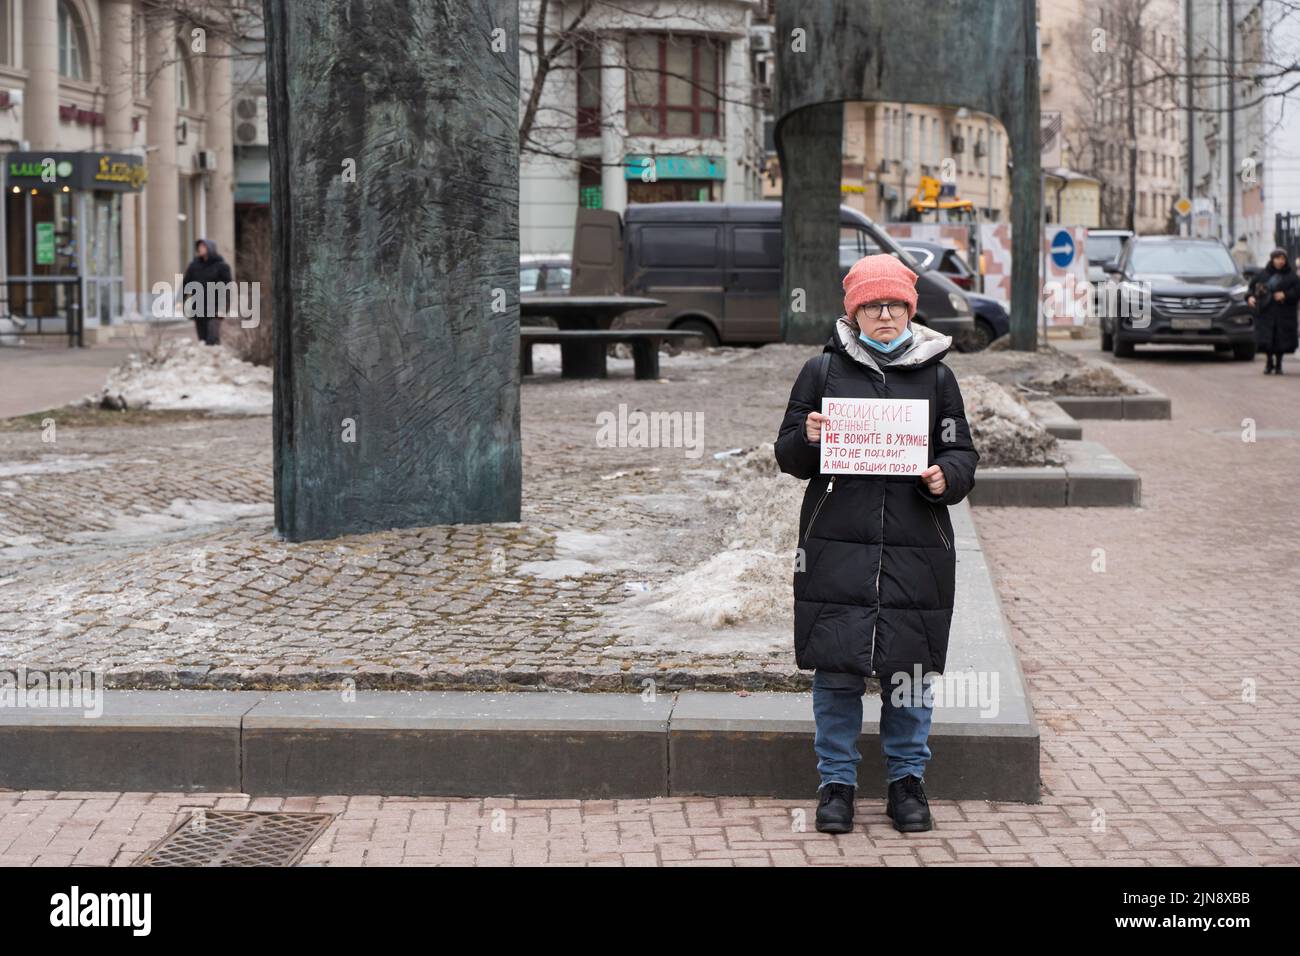 Moscú , Rusia - 26 de febrero de 2022: Protesta por un solo piquete contra la guerra de Rusia en Ucrania. La inscripción en el cartel - Los militares rusos no luchan en Ucrania. Esto no es una hazaña, sino una vergüenza común. Fotografía de alta calidad Foto de stock